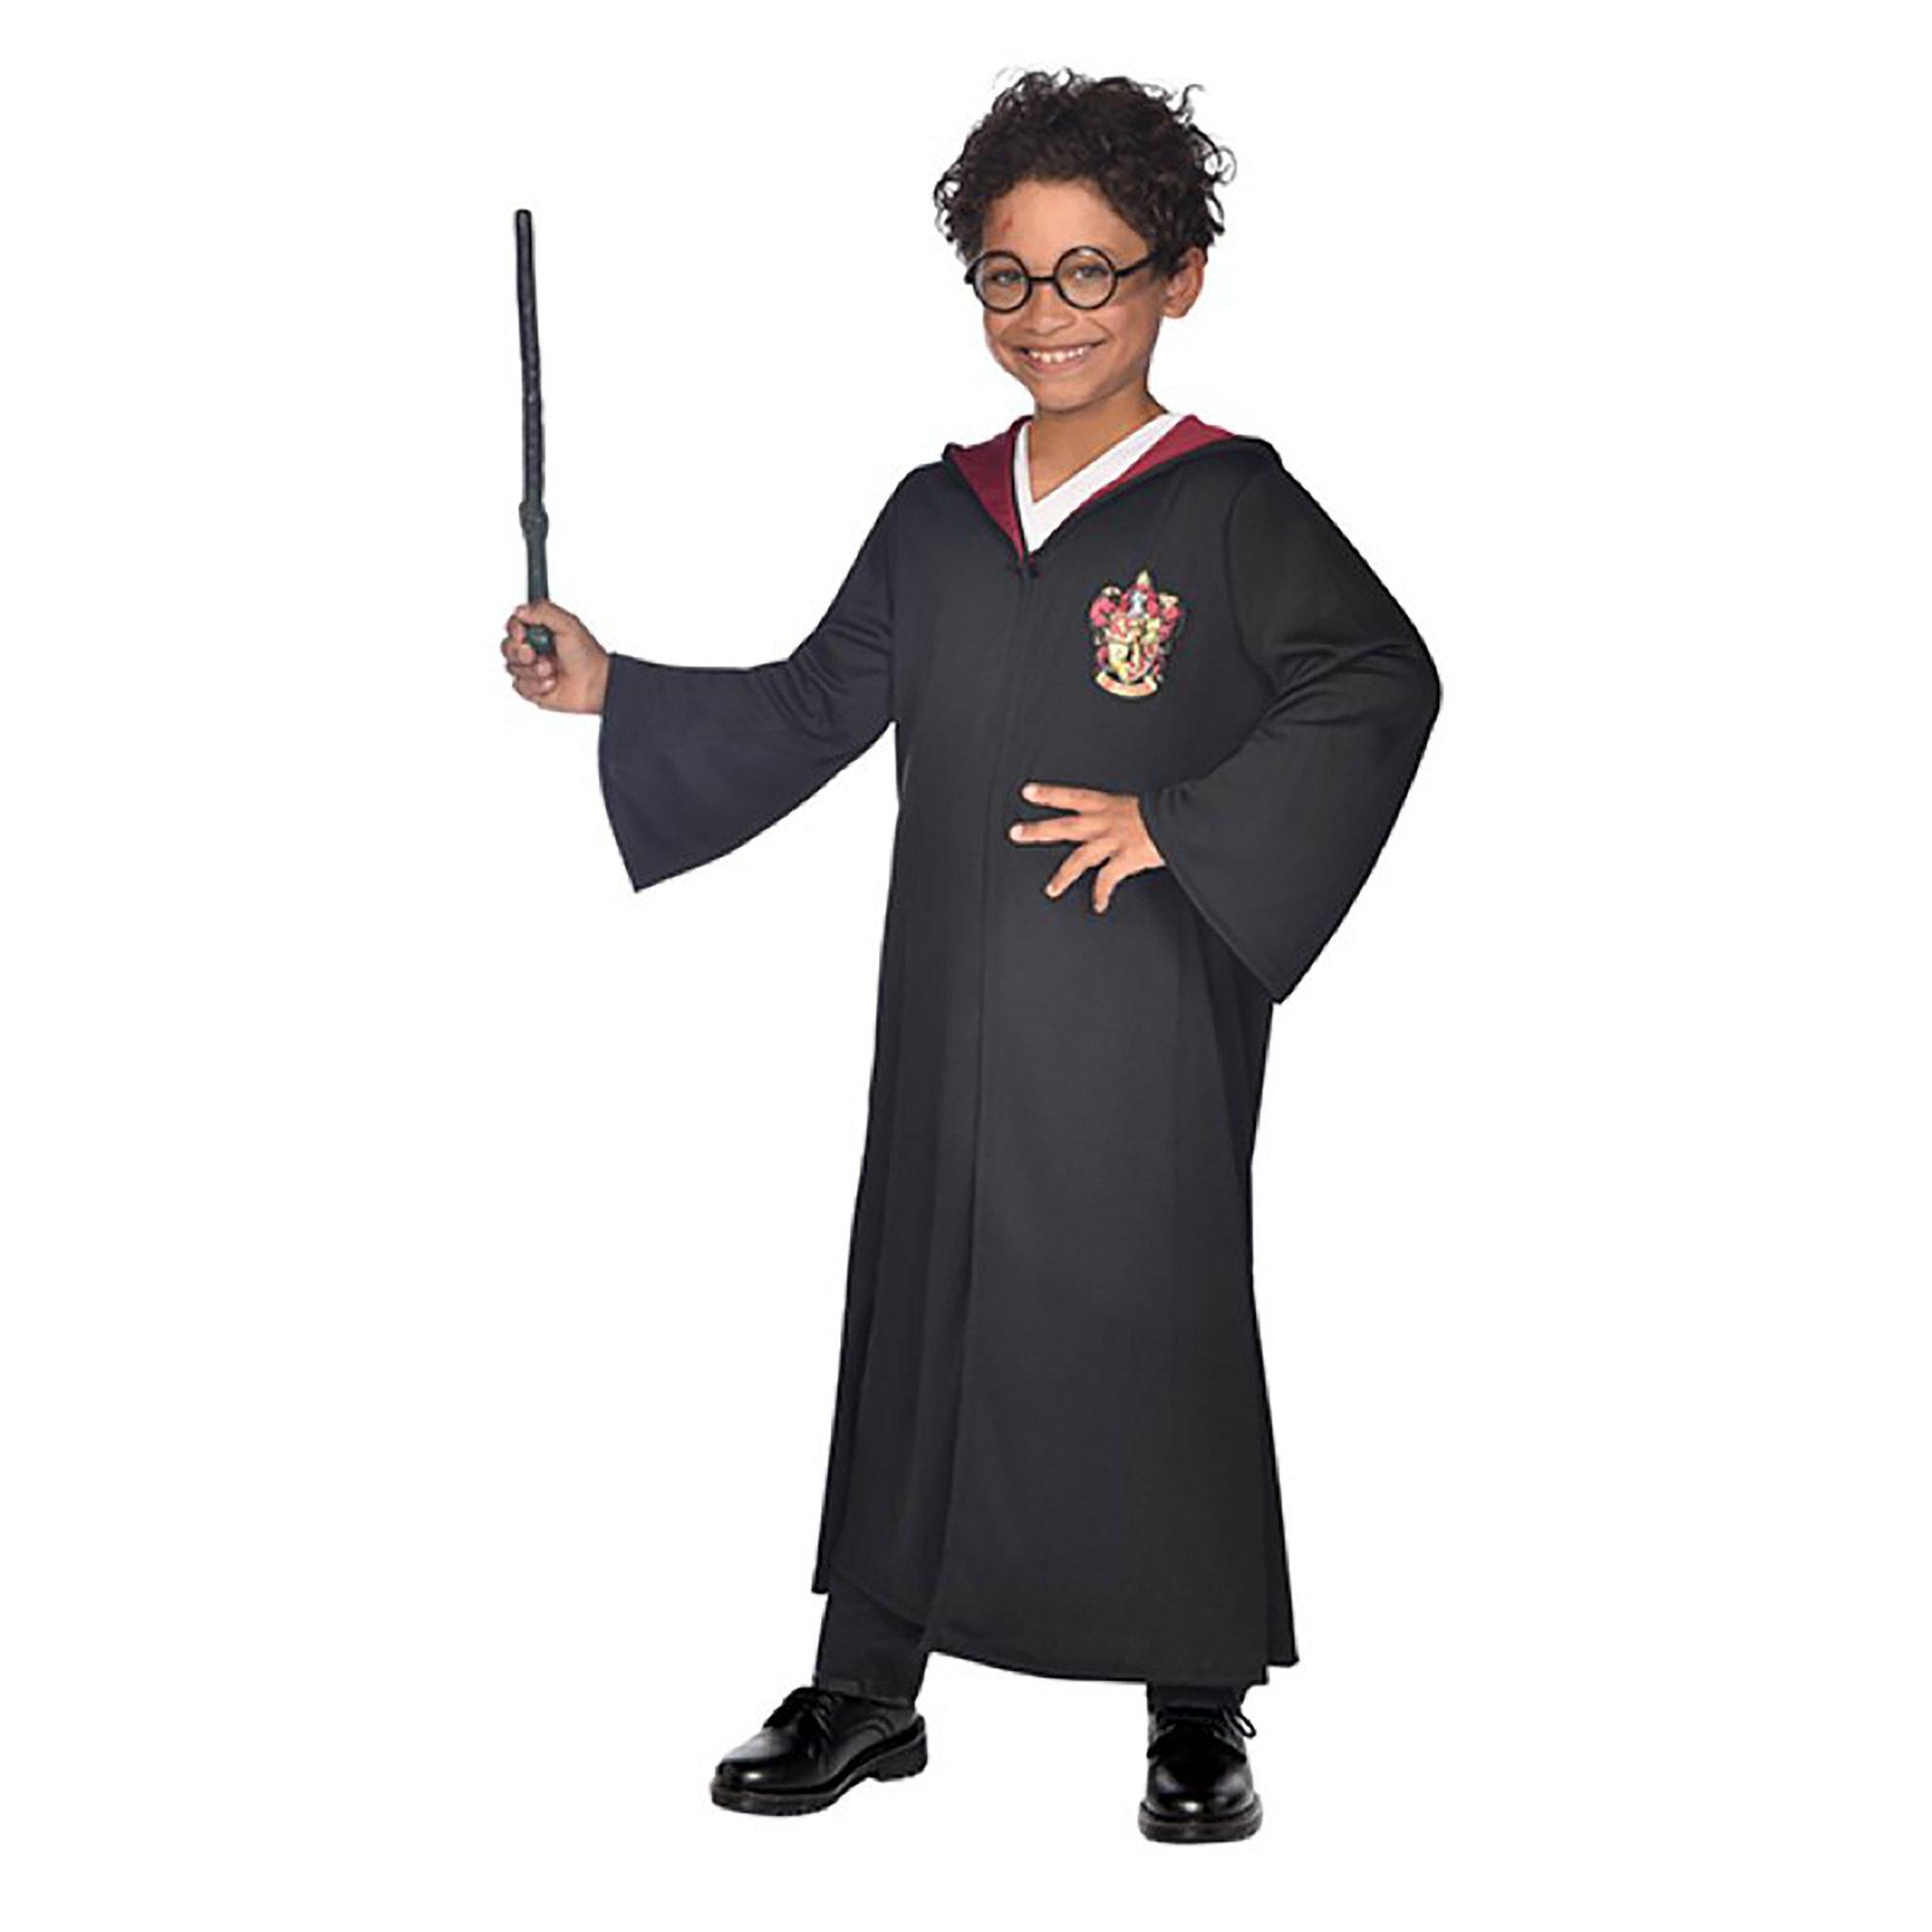 Image of amscan Harry Potter Kostüm mit Brille und Zauberstab - XS